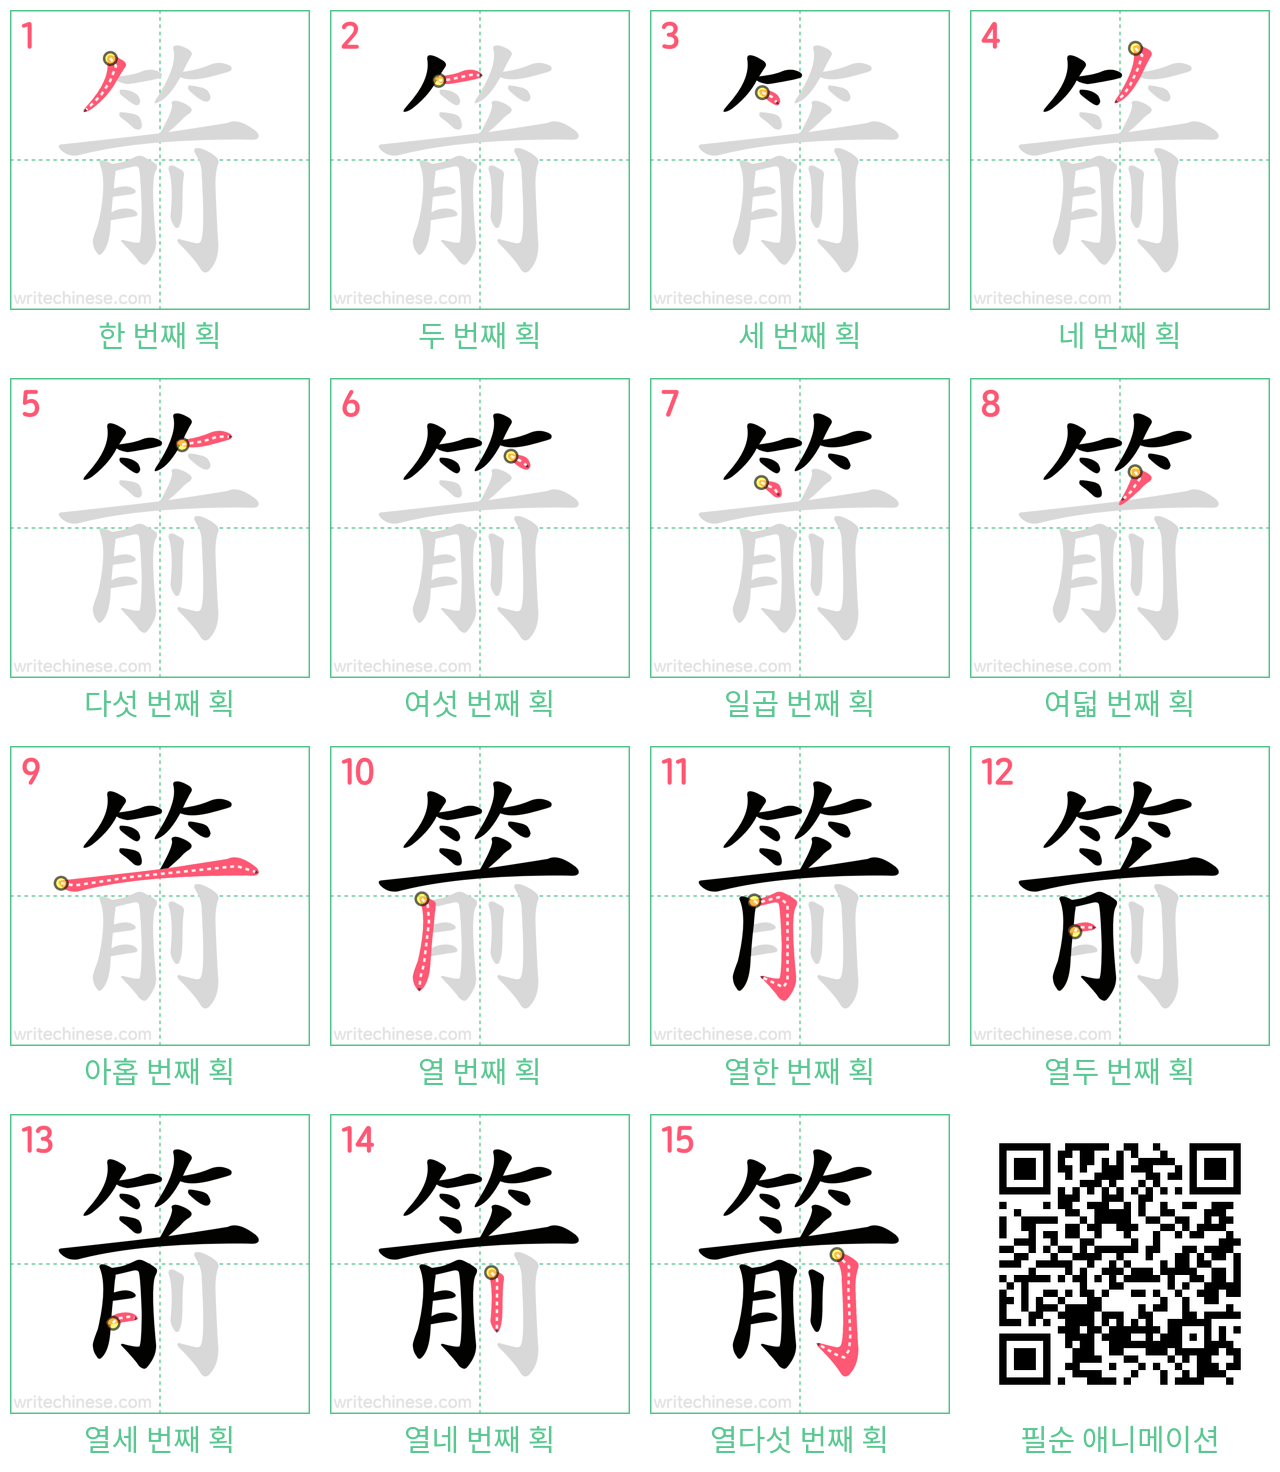 箭 step-by-step stroke order diagrams